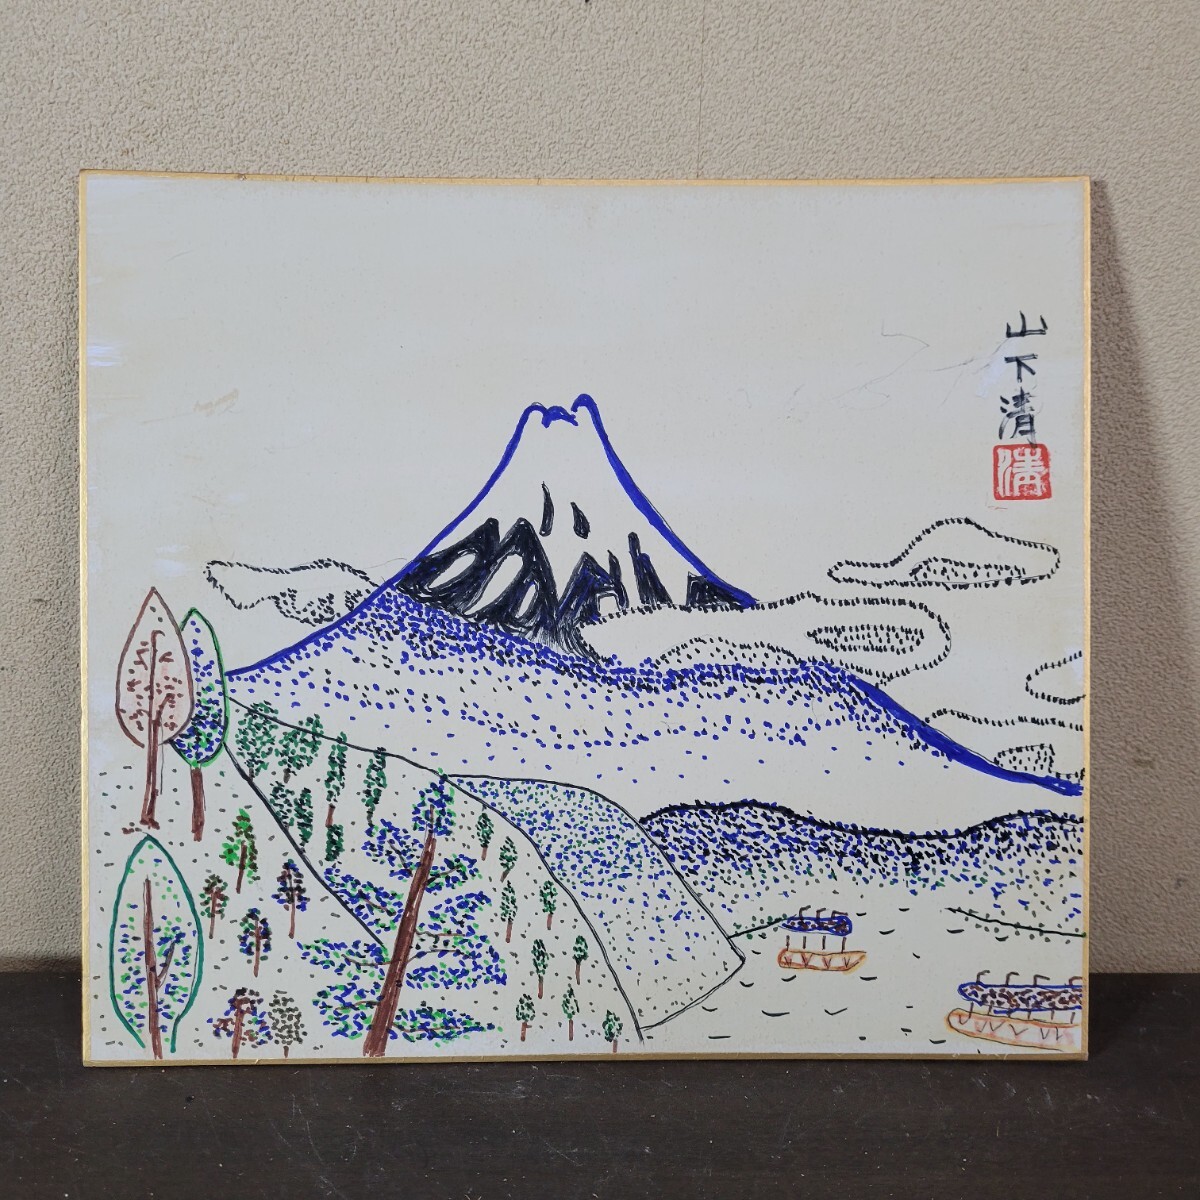 [Kopie] Kiyoshi Yamashita Federzeichnung auf farbigem Papier Titel Mt. Fuji Imperial Art Appraisal Seal Abmessungen Höhe 26 Breite 23, Malerei, Japanische Malerei, Landschaft, Fugetsu